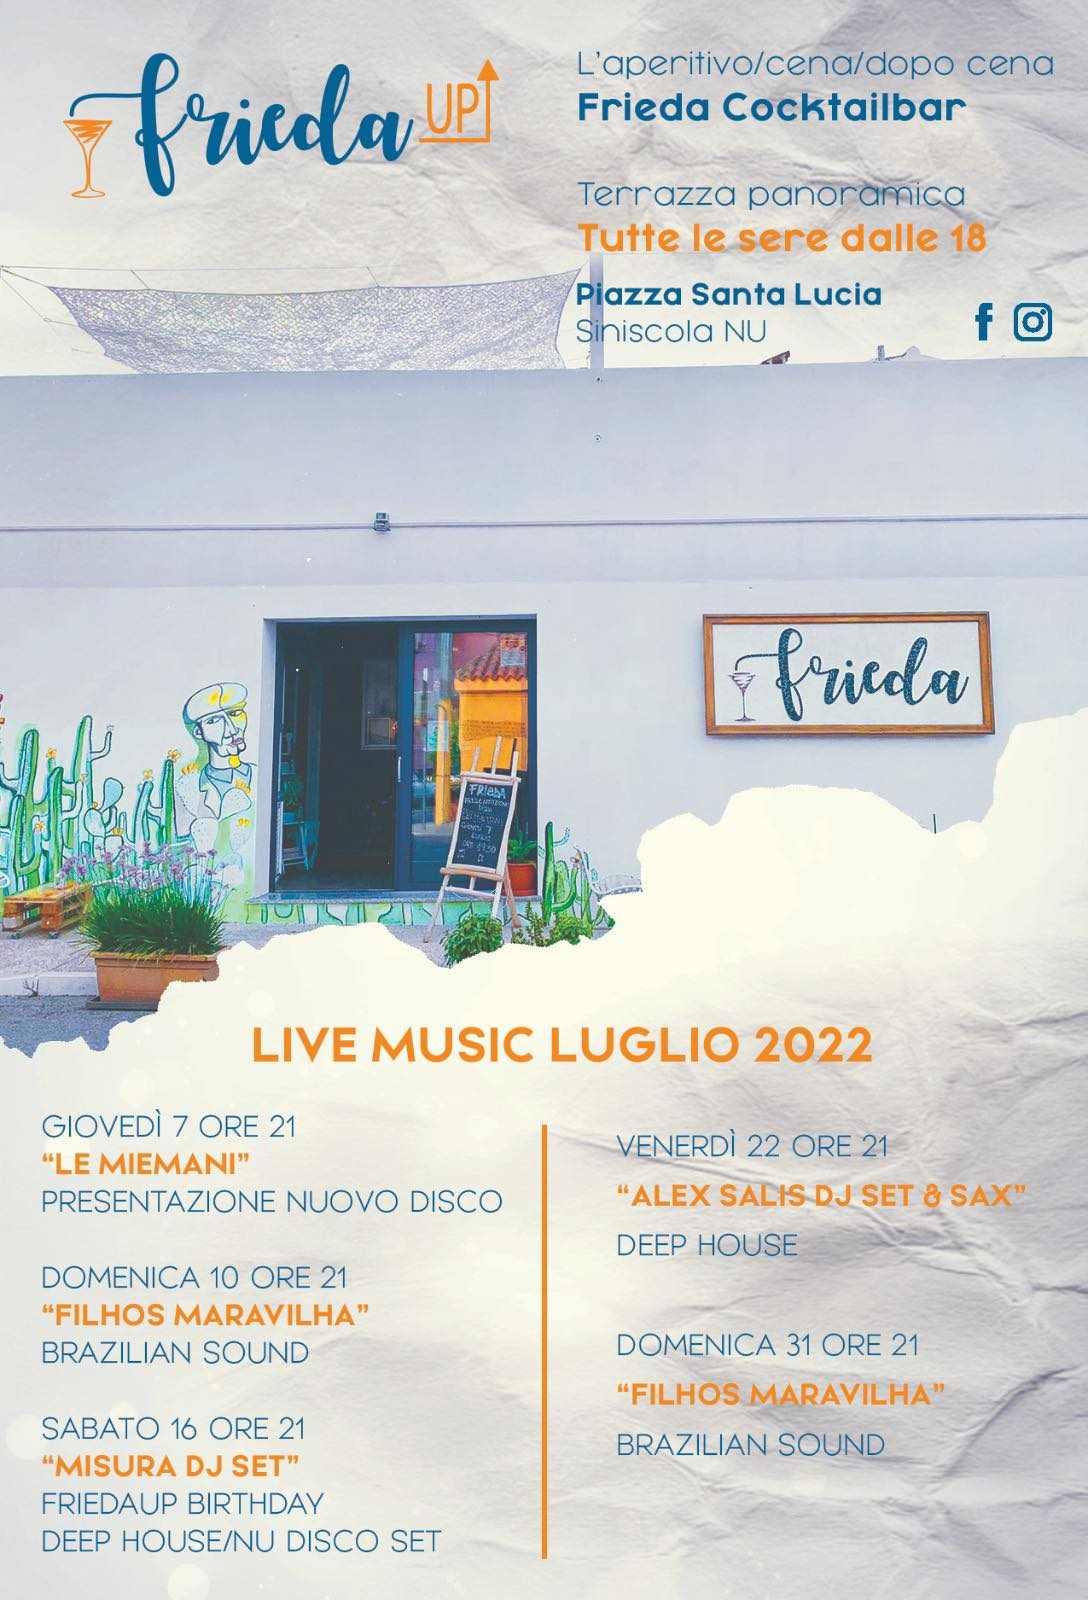 Siniscola
"Eventi musicali di luglio del Frieda di Santa Lucia" 
Luglio 2022